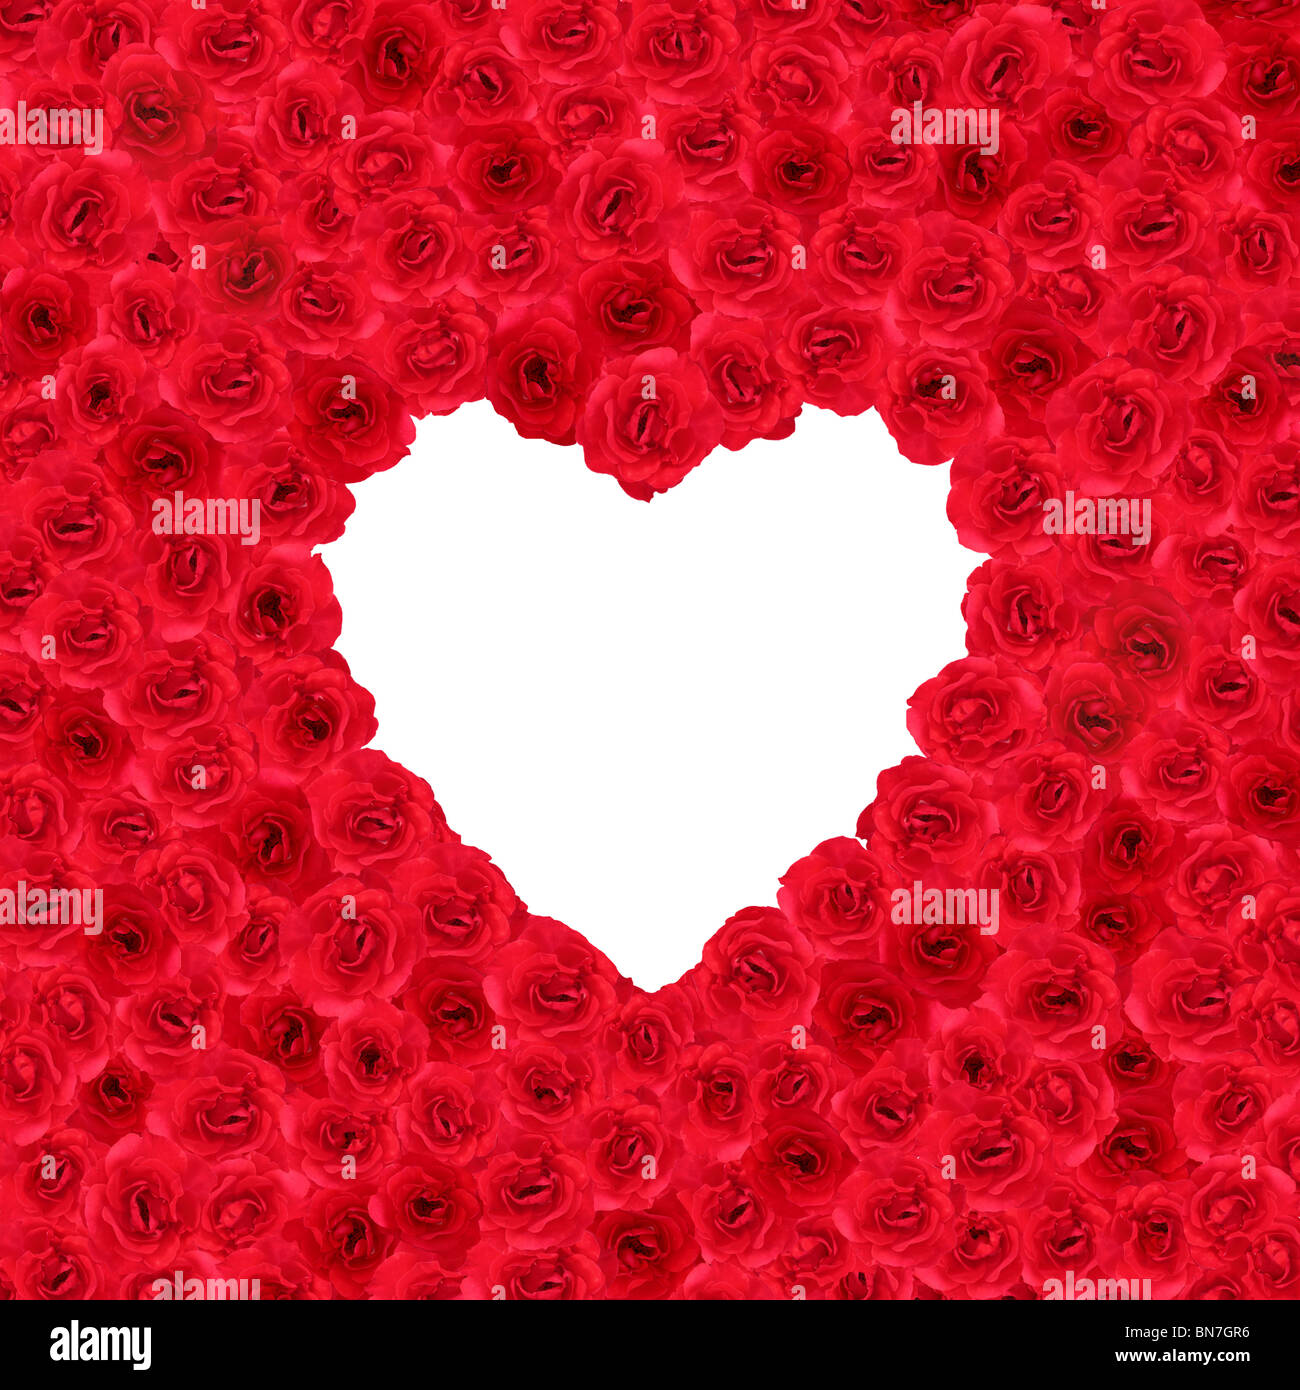 De nombreuses roses rouges formant une forme de coeur au format carré Banque D'Images